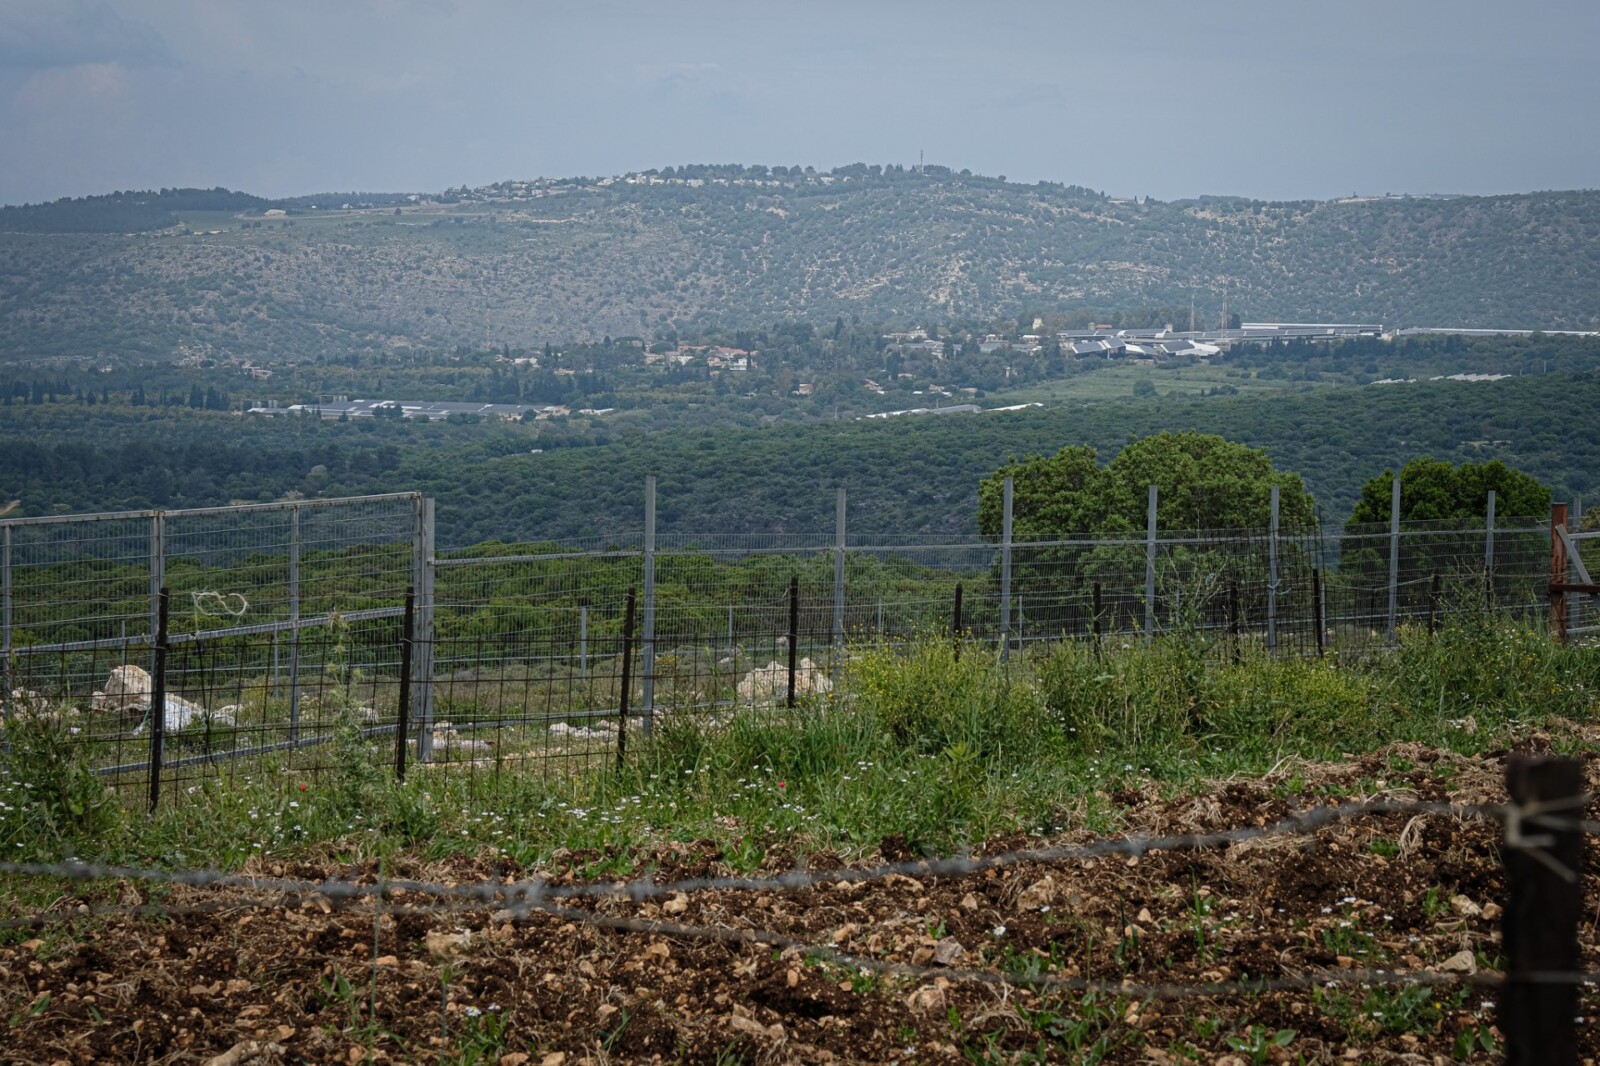 הכפר ערב אל עראמשה כפי שנראה ממצפה הילה (צילום: דוד טברסקי)